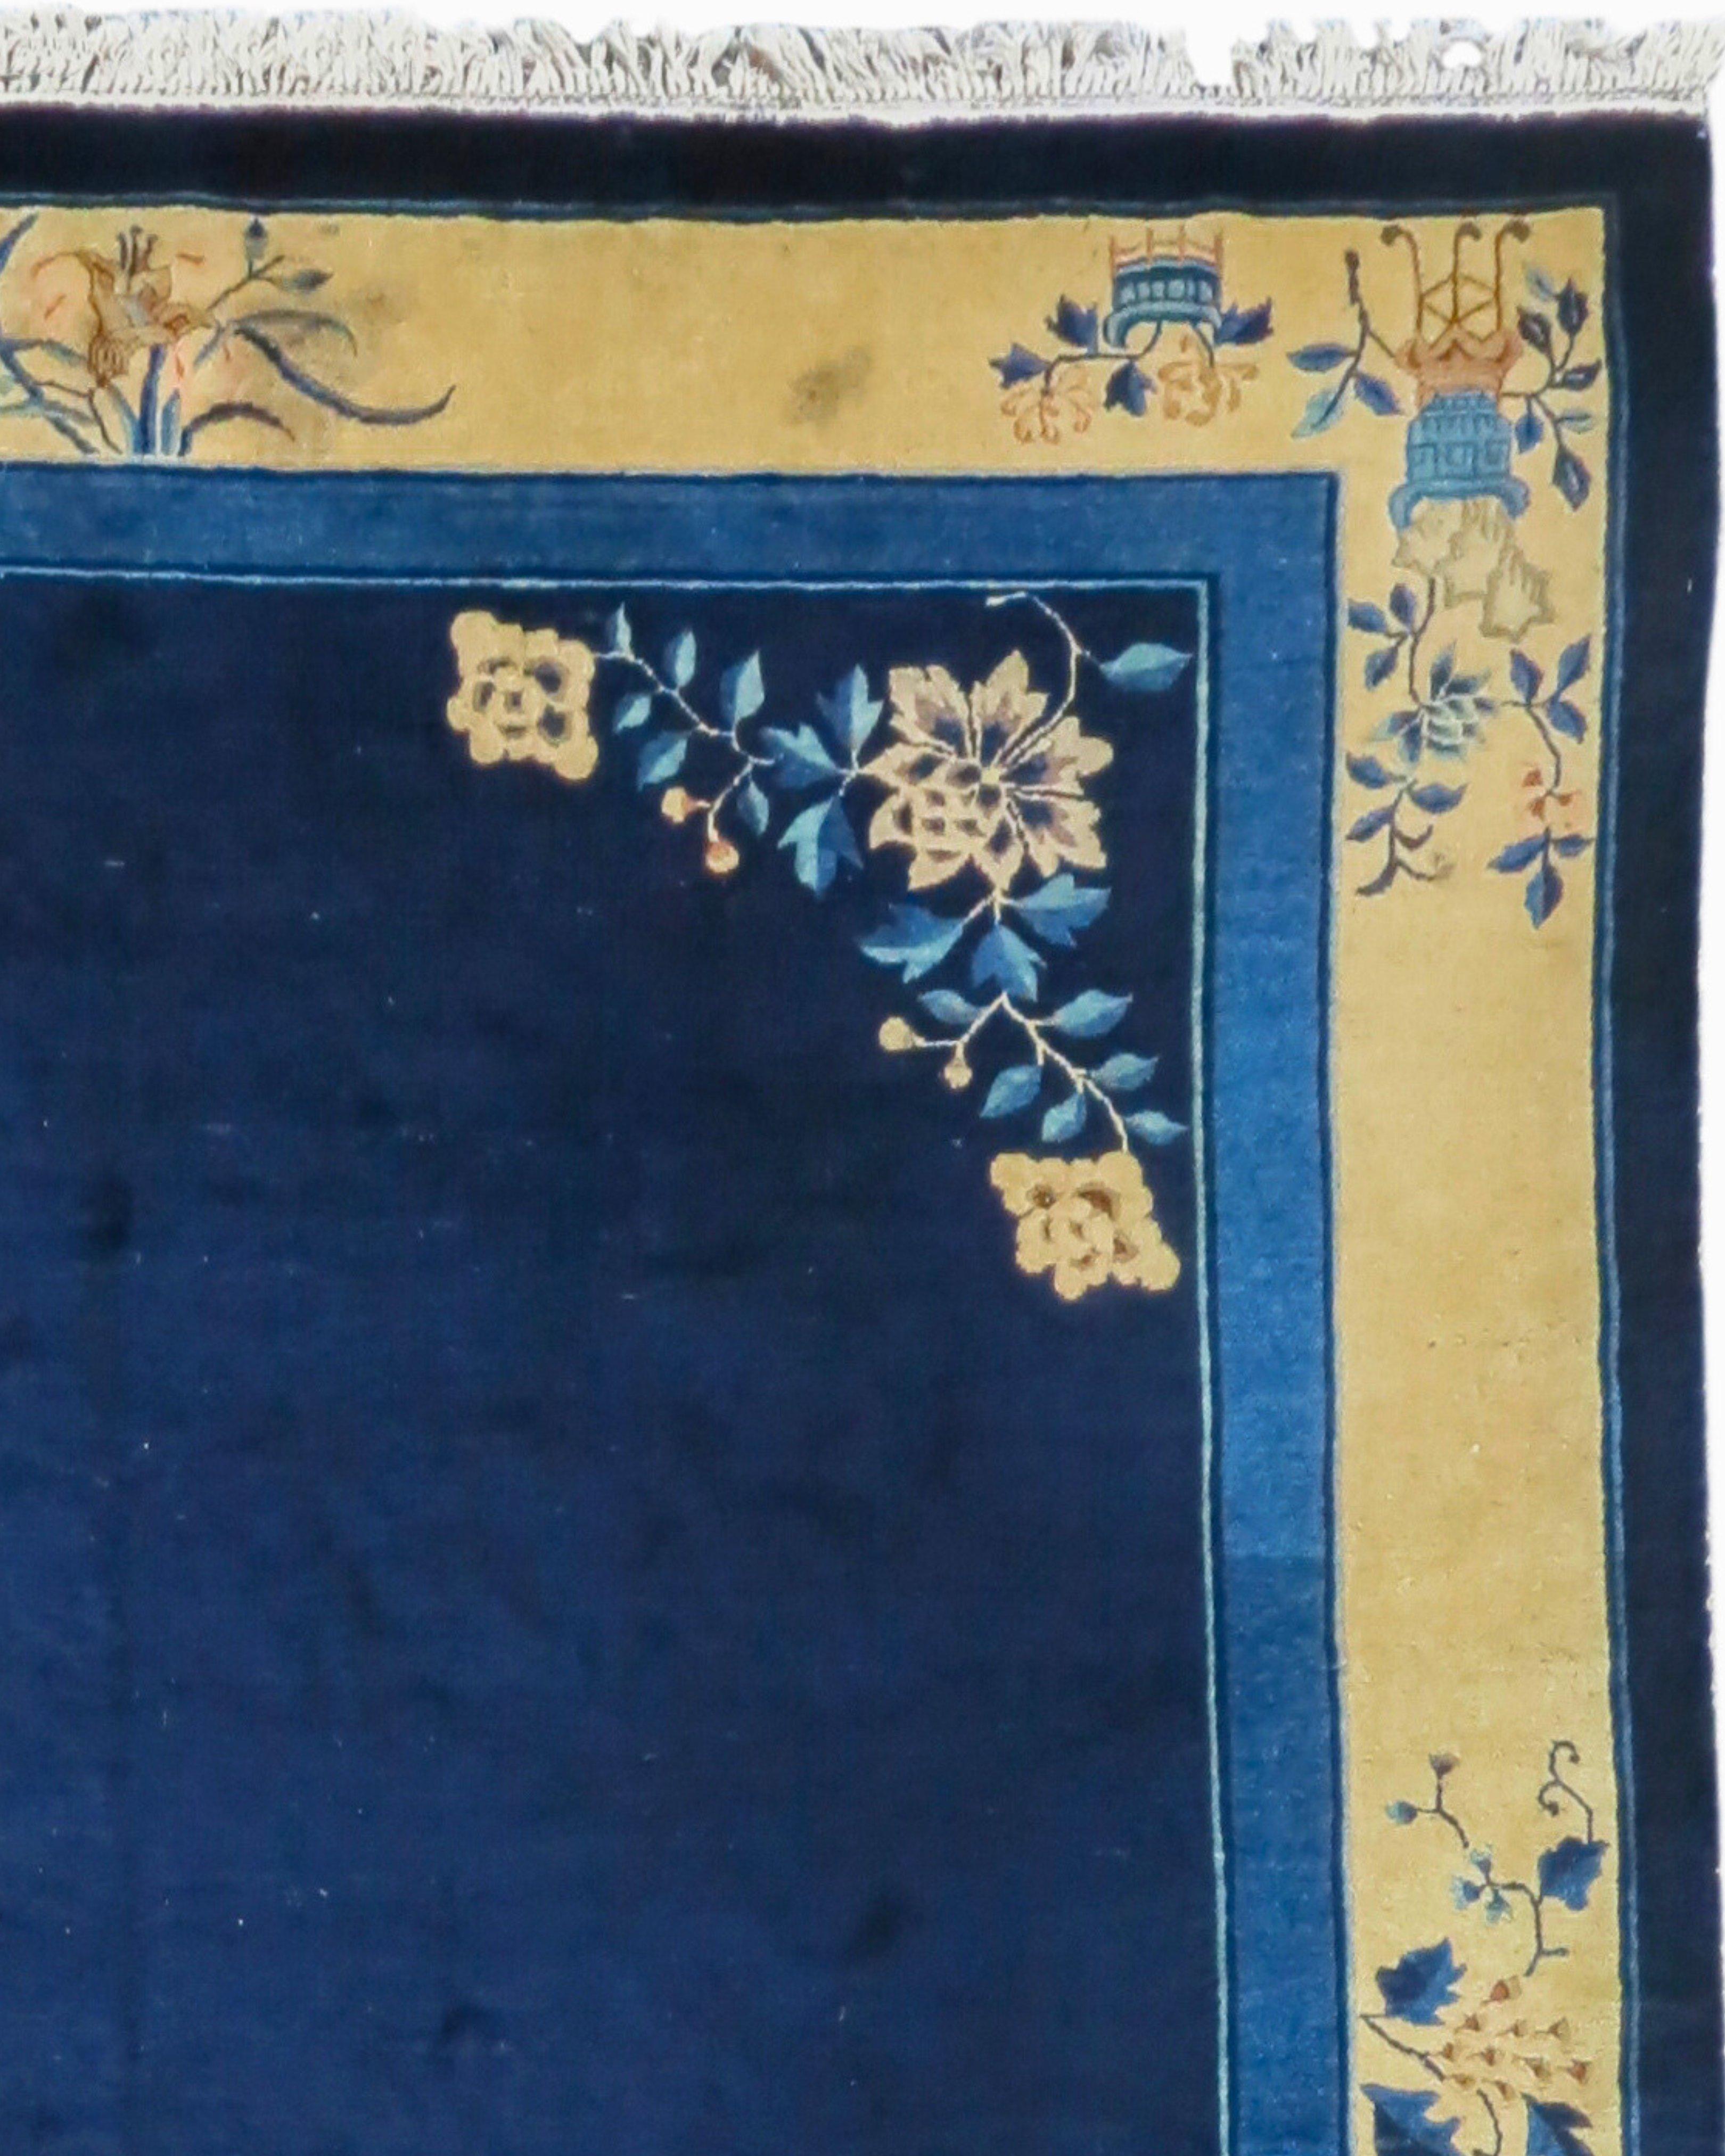 Antiker chinesischer Pekinger Teppich, um 1900

Zusätzliche Informationen:
Abmessungen: 9'0